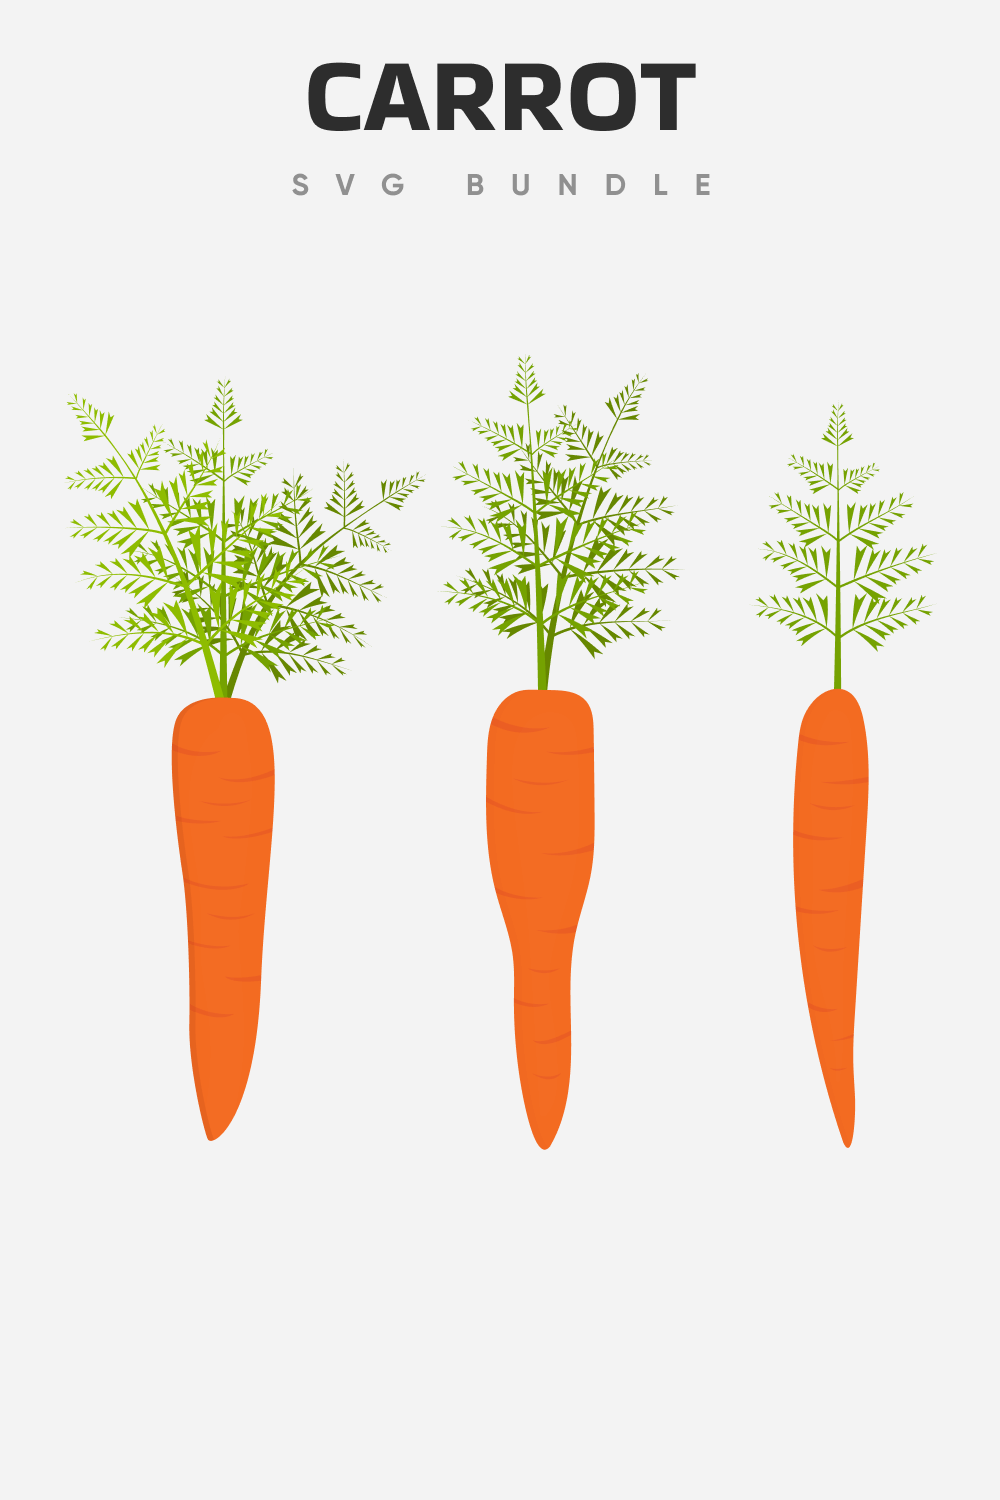 Carrot drawings for Pinterest.